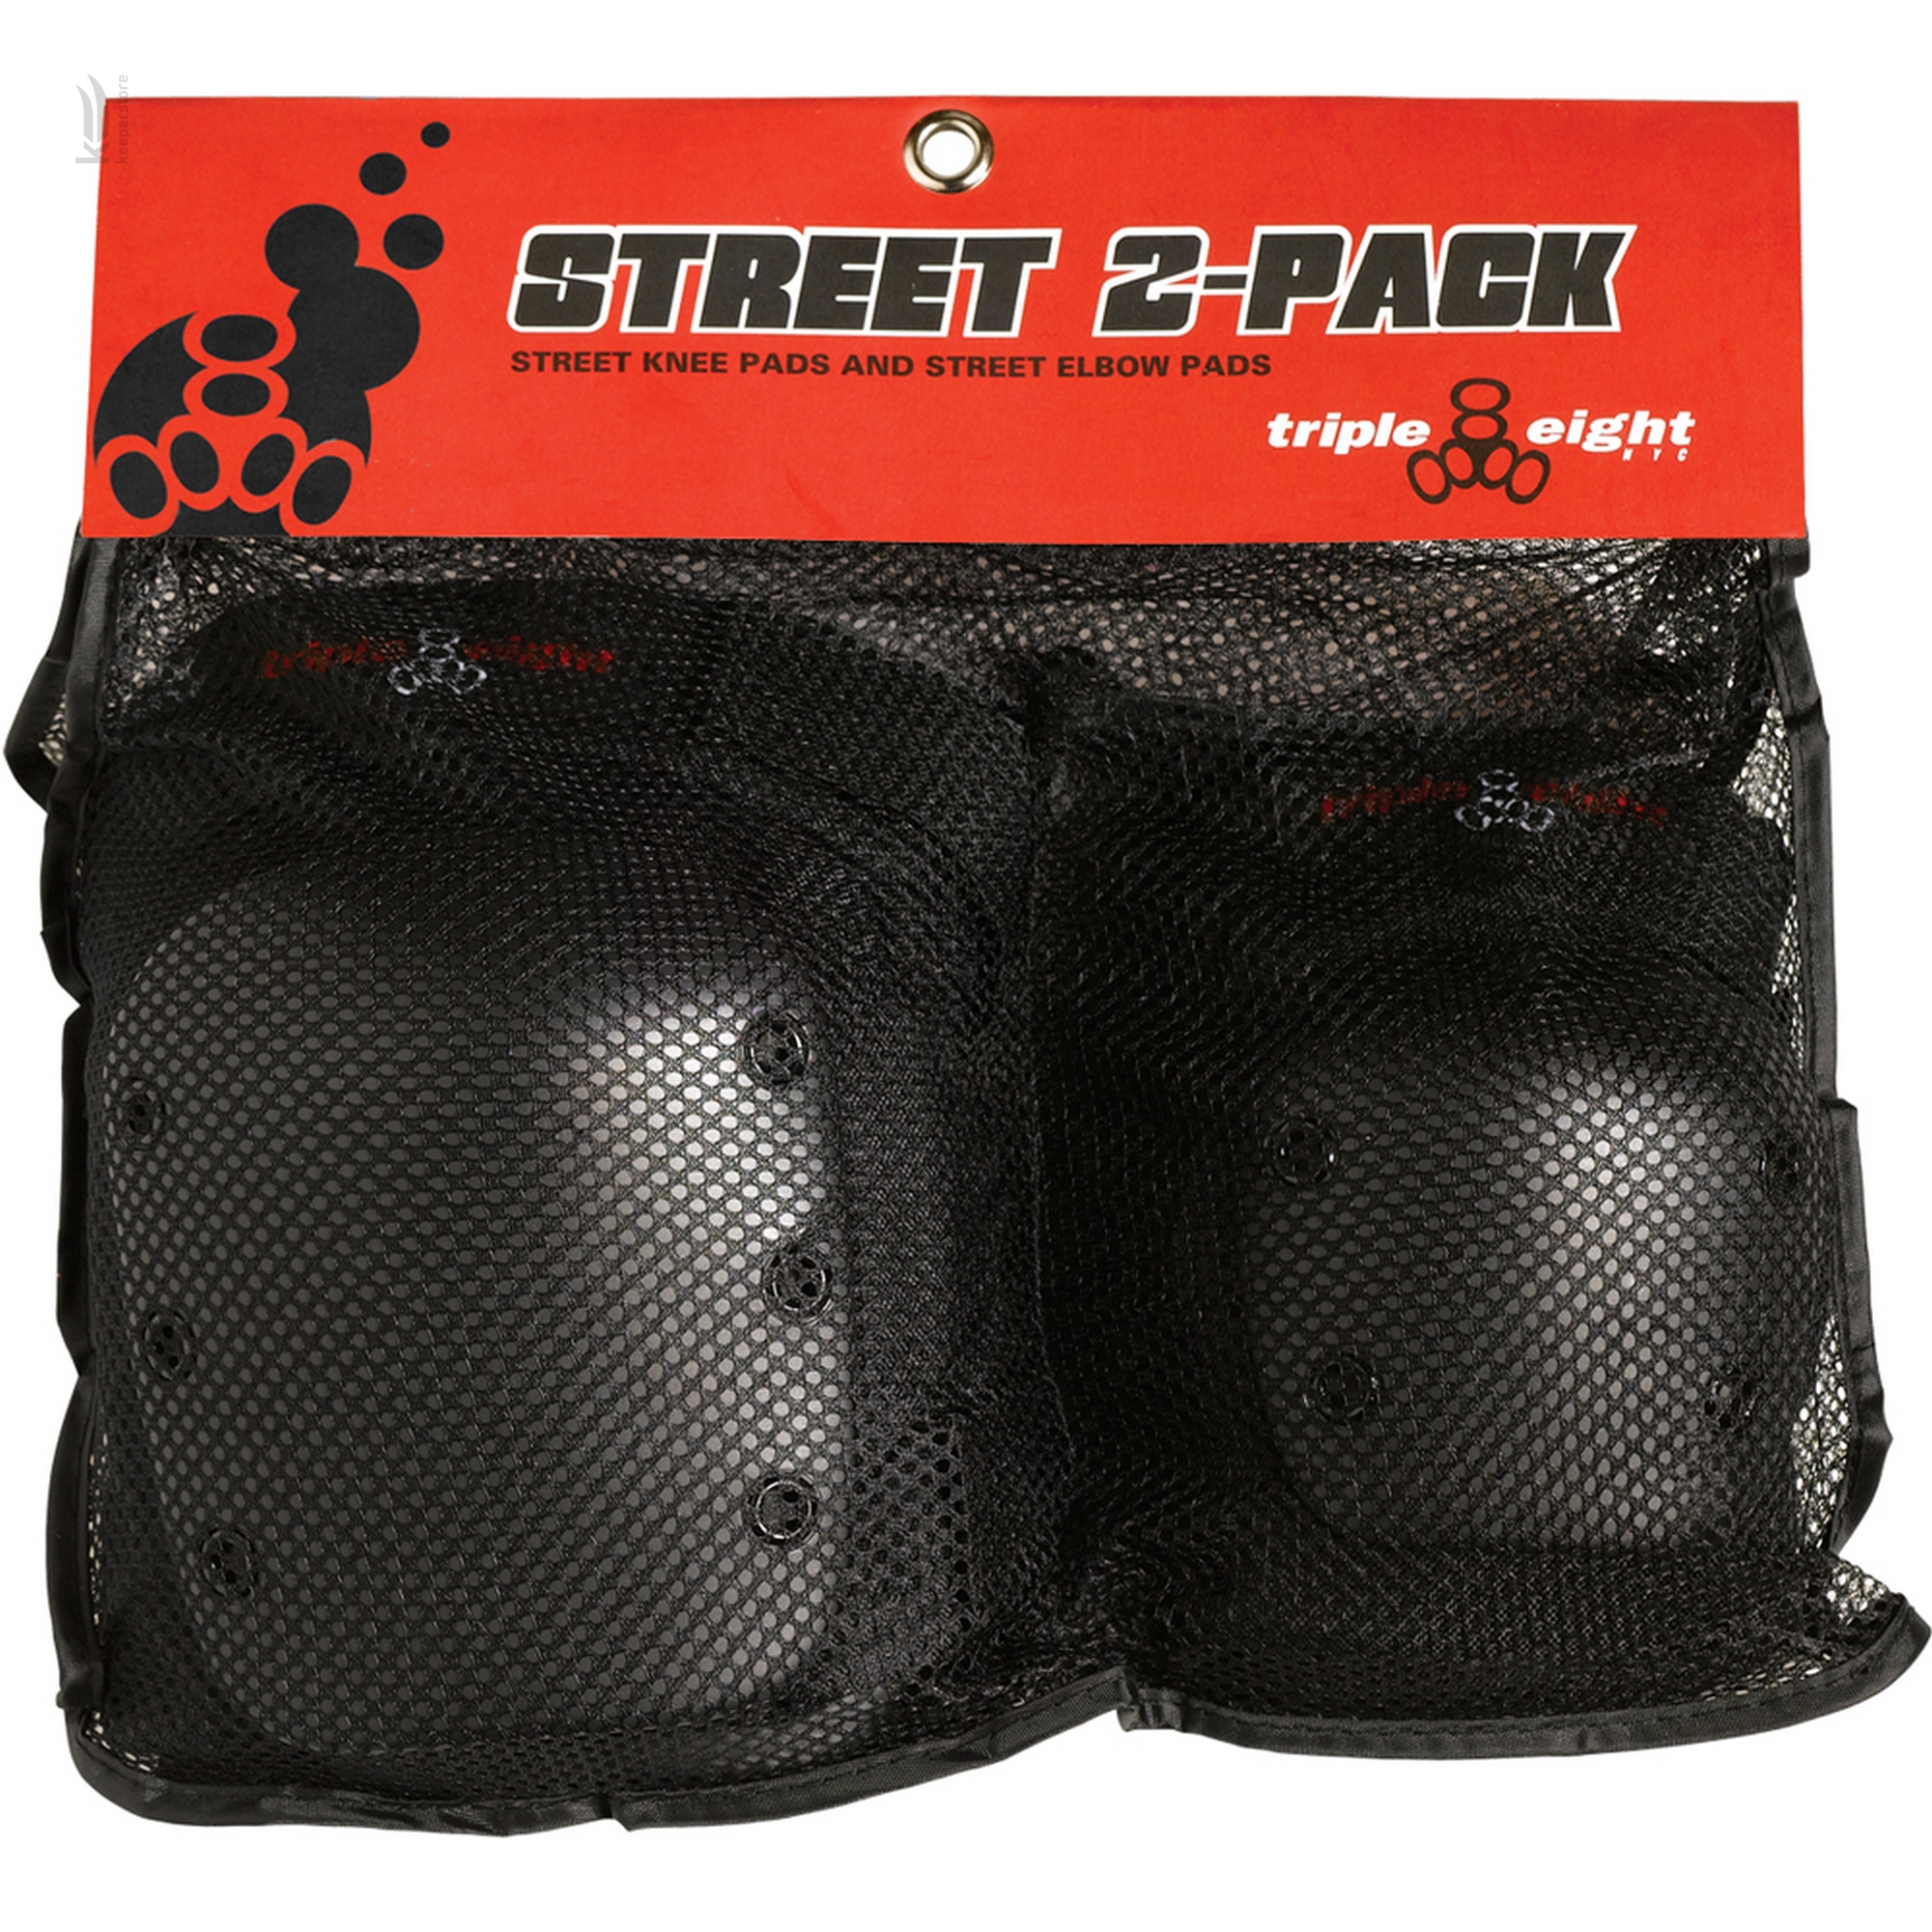 Захист для велосипедиста Triple8 Street 2-Pack (S)